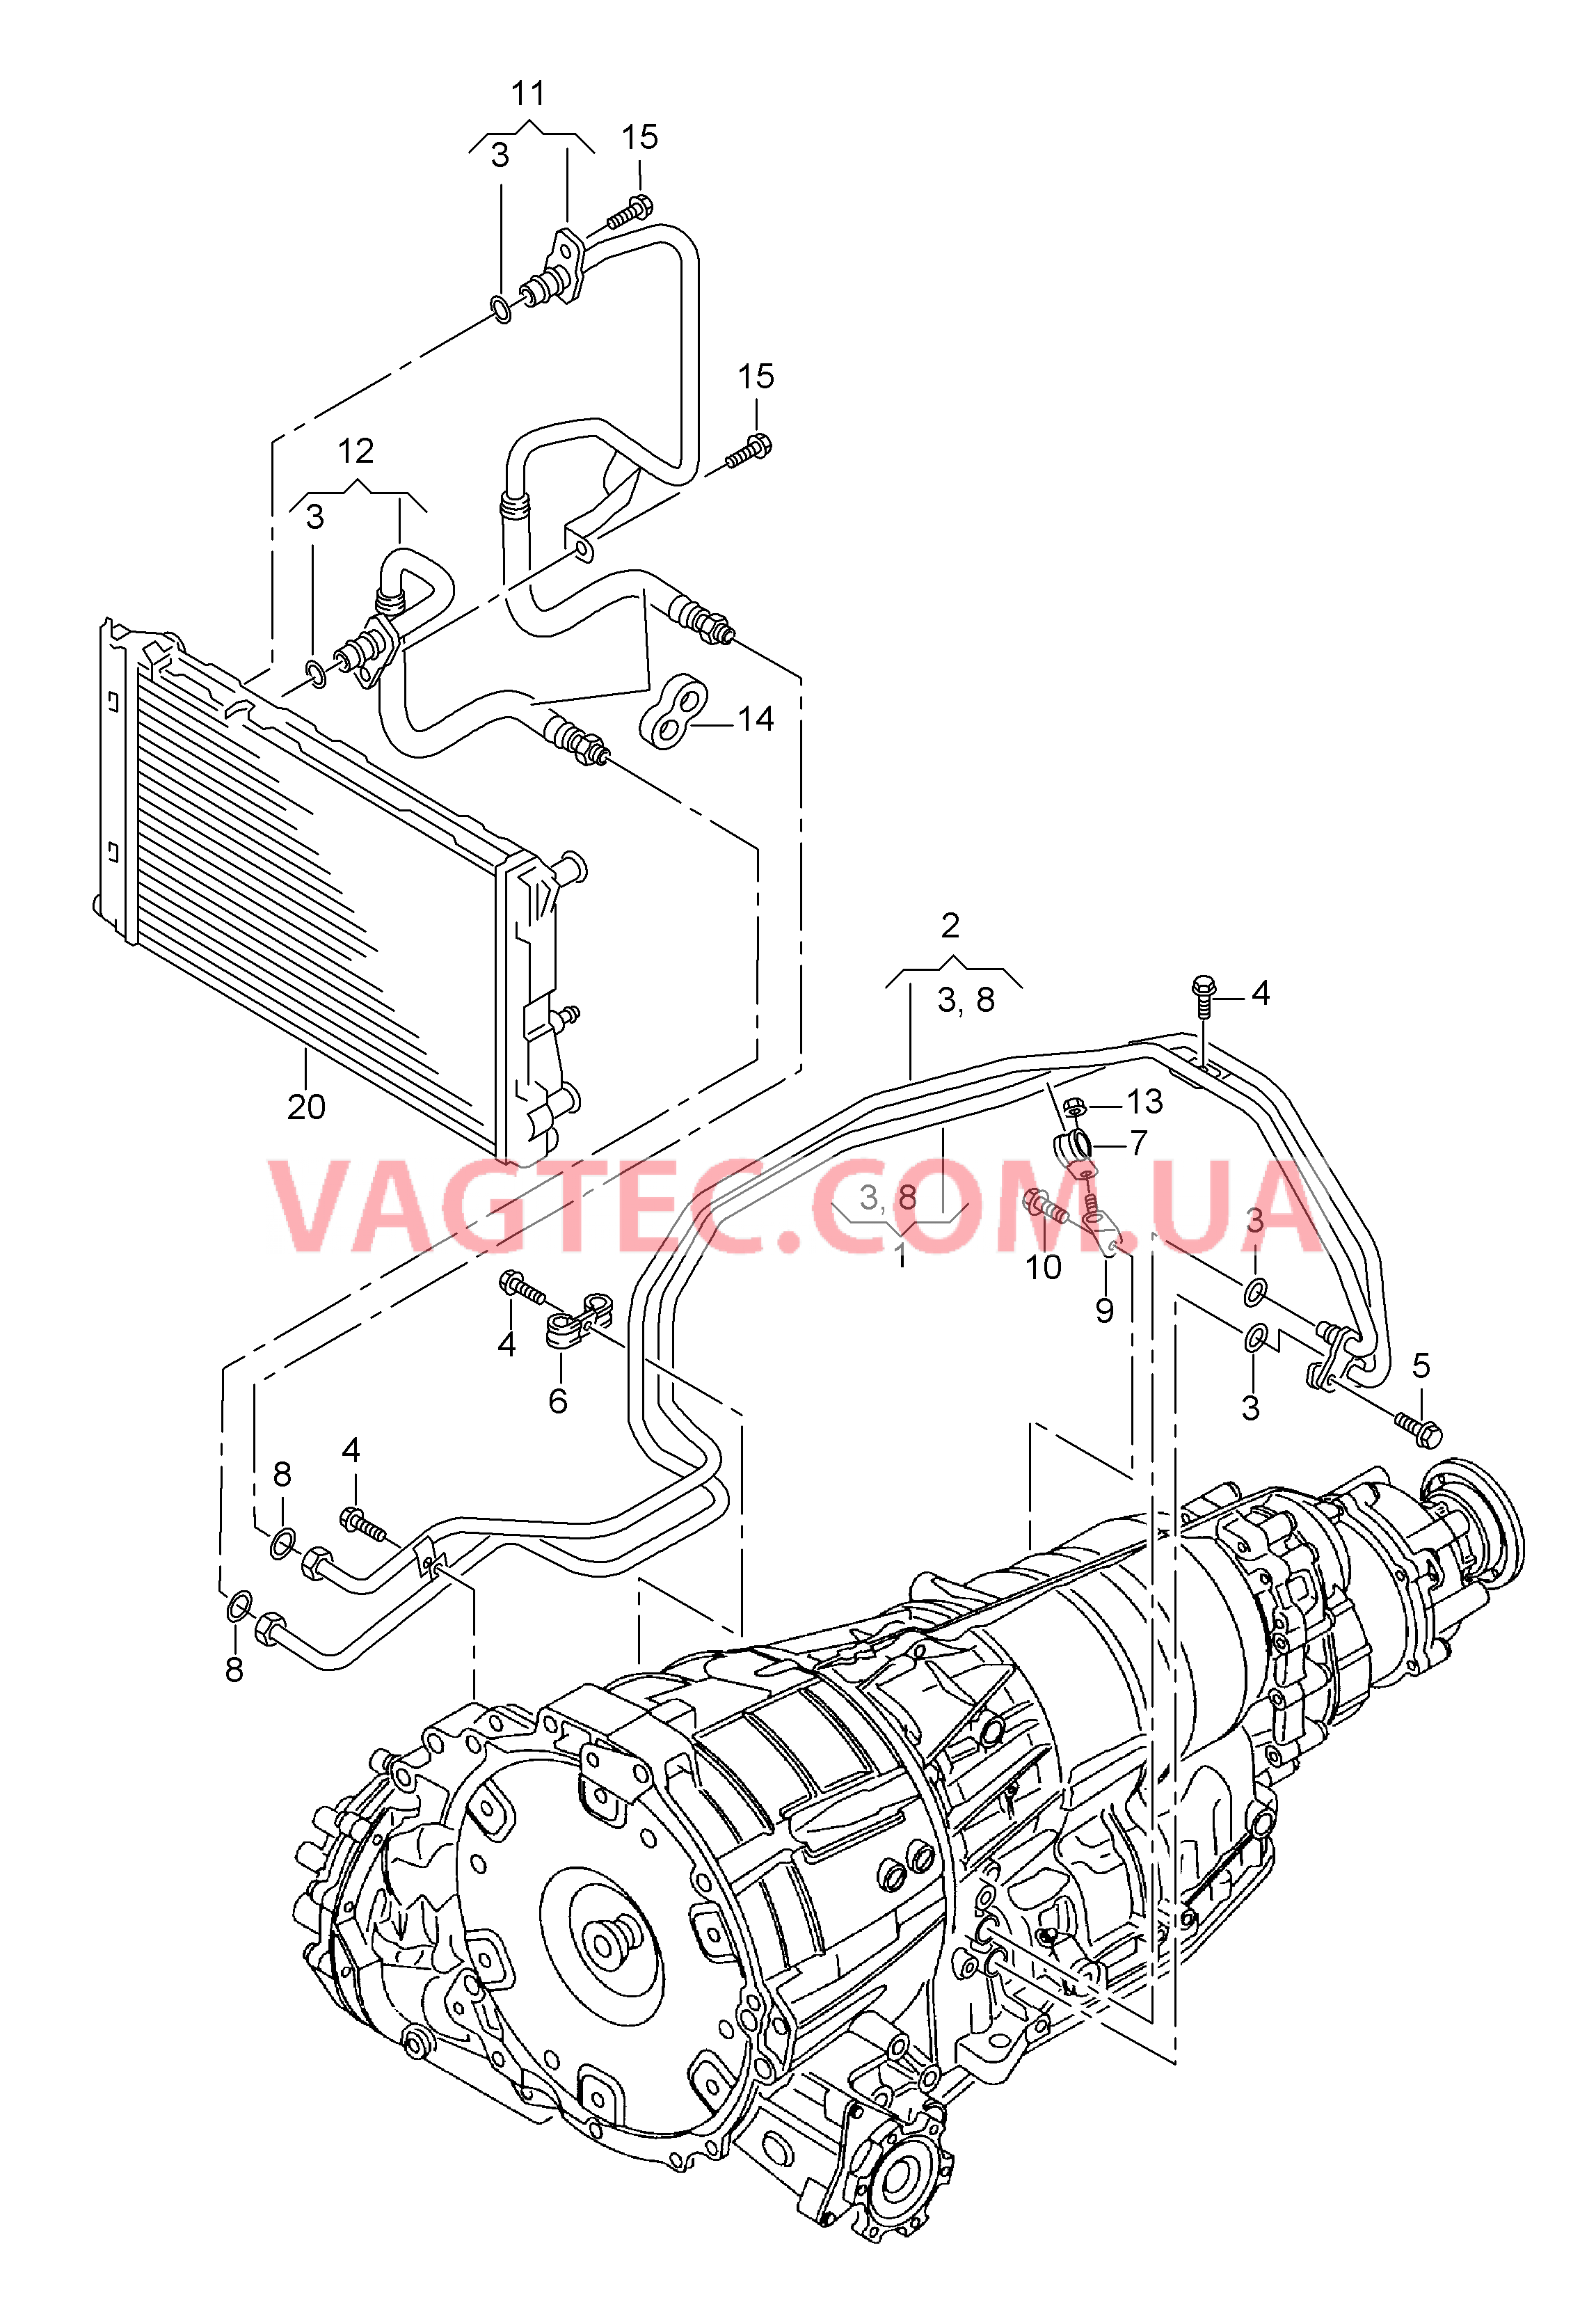 Напорный маслопровод для охлаждения масла коробки передач  8-ступенчатая АКП для а/м с гибридным приводом  для AUDI Q5 2010